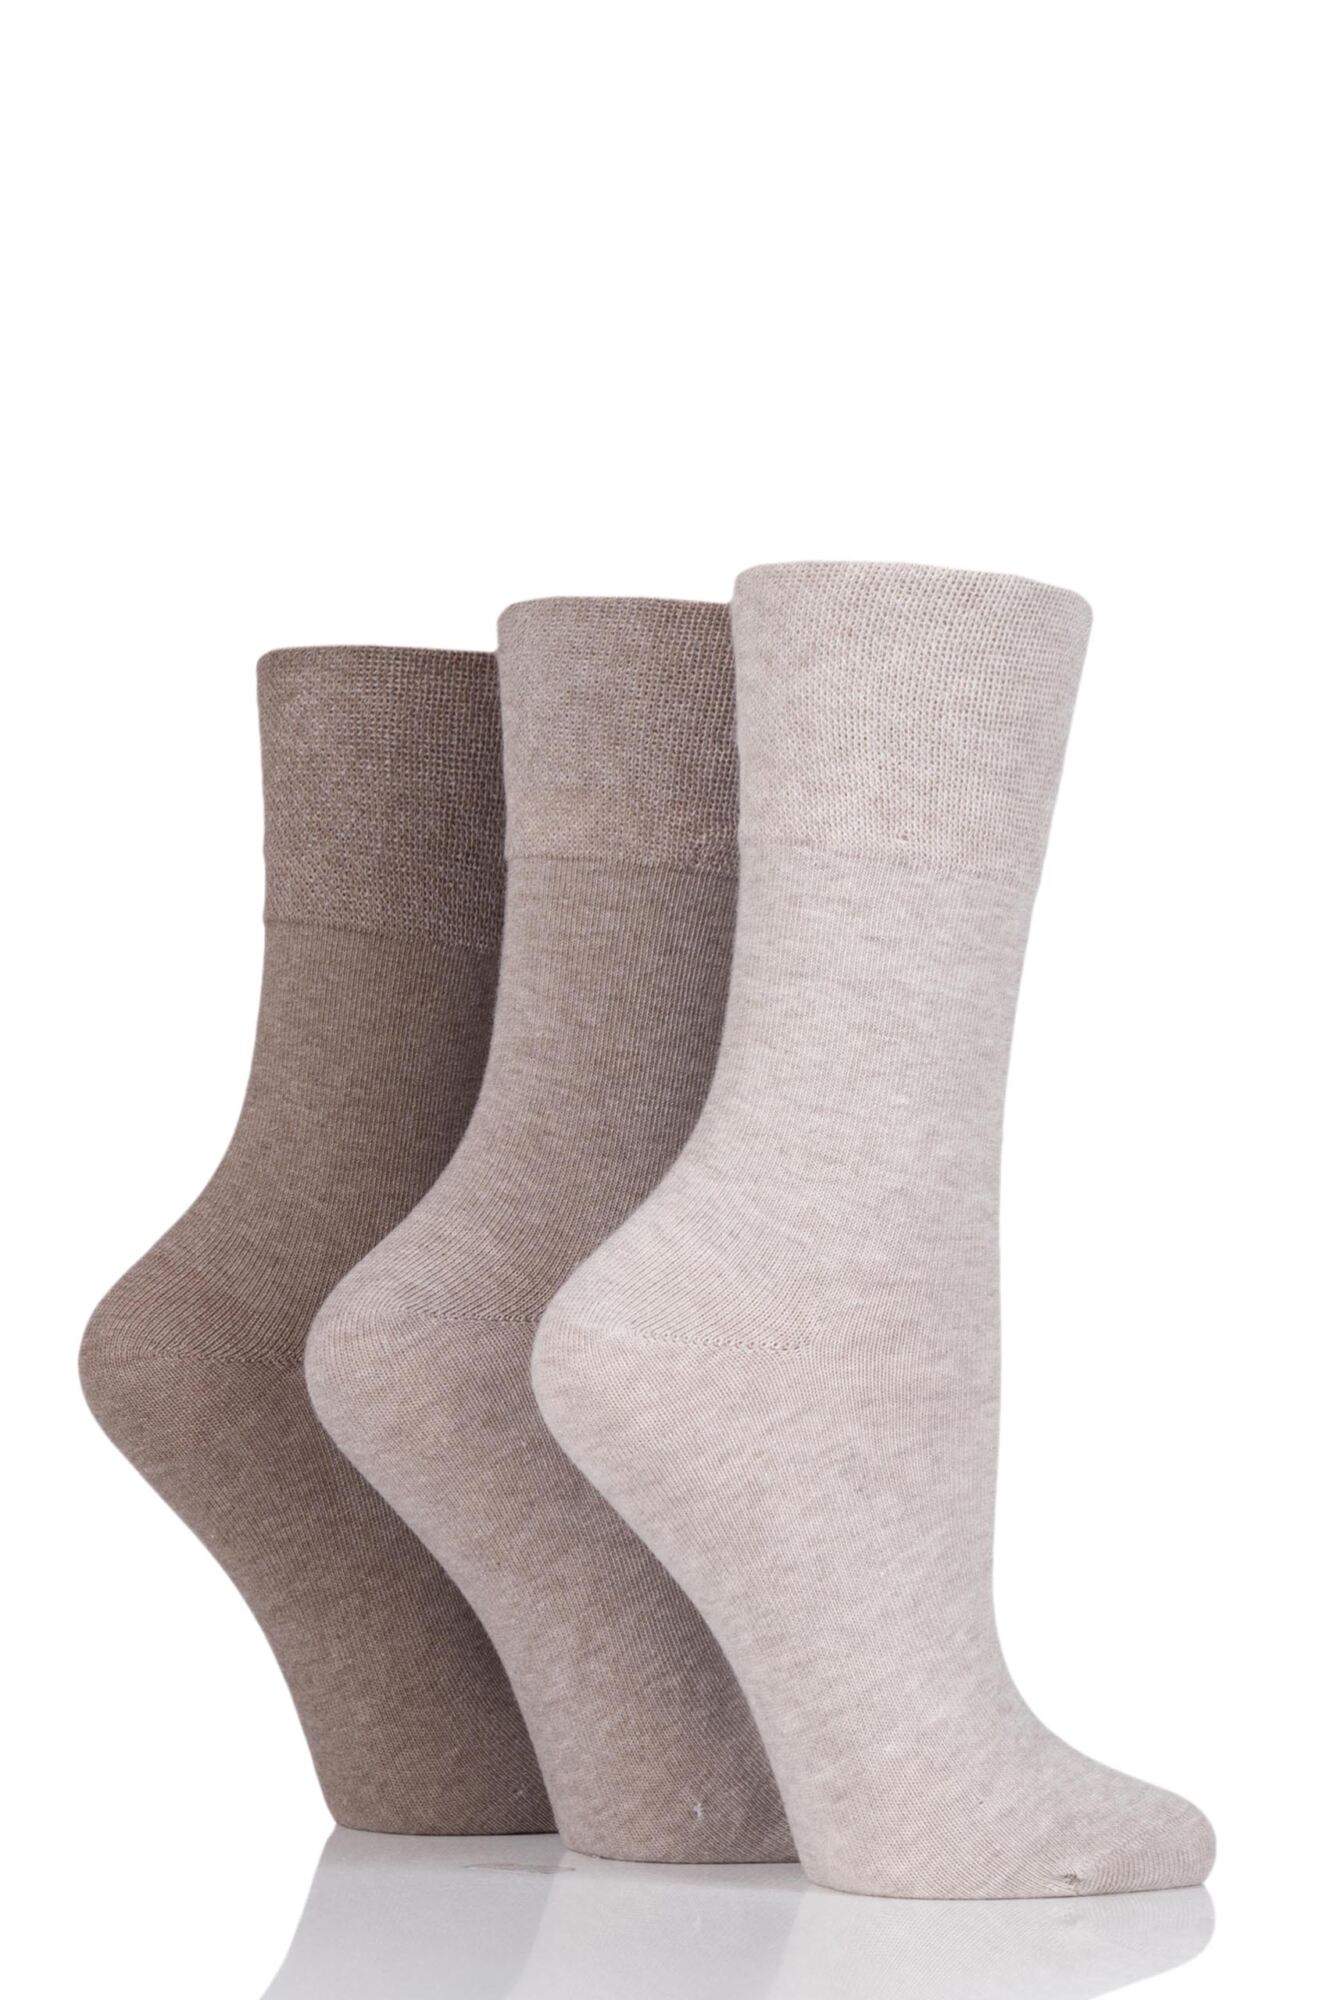 SockShop-Ladies Diabetic Socks-Gentle Grip-3 Pair Pack-77% Cotton-Natural